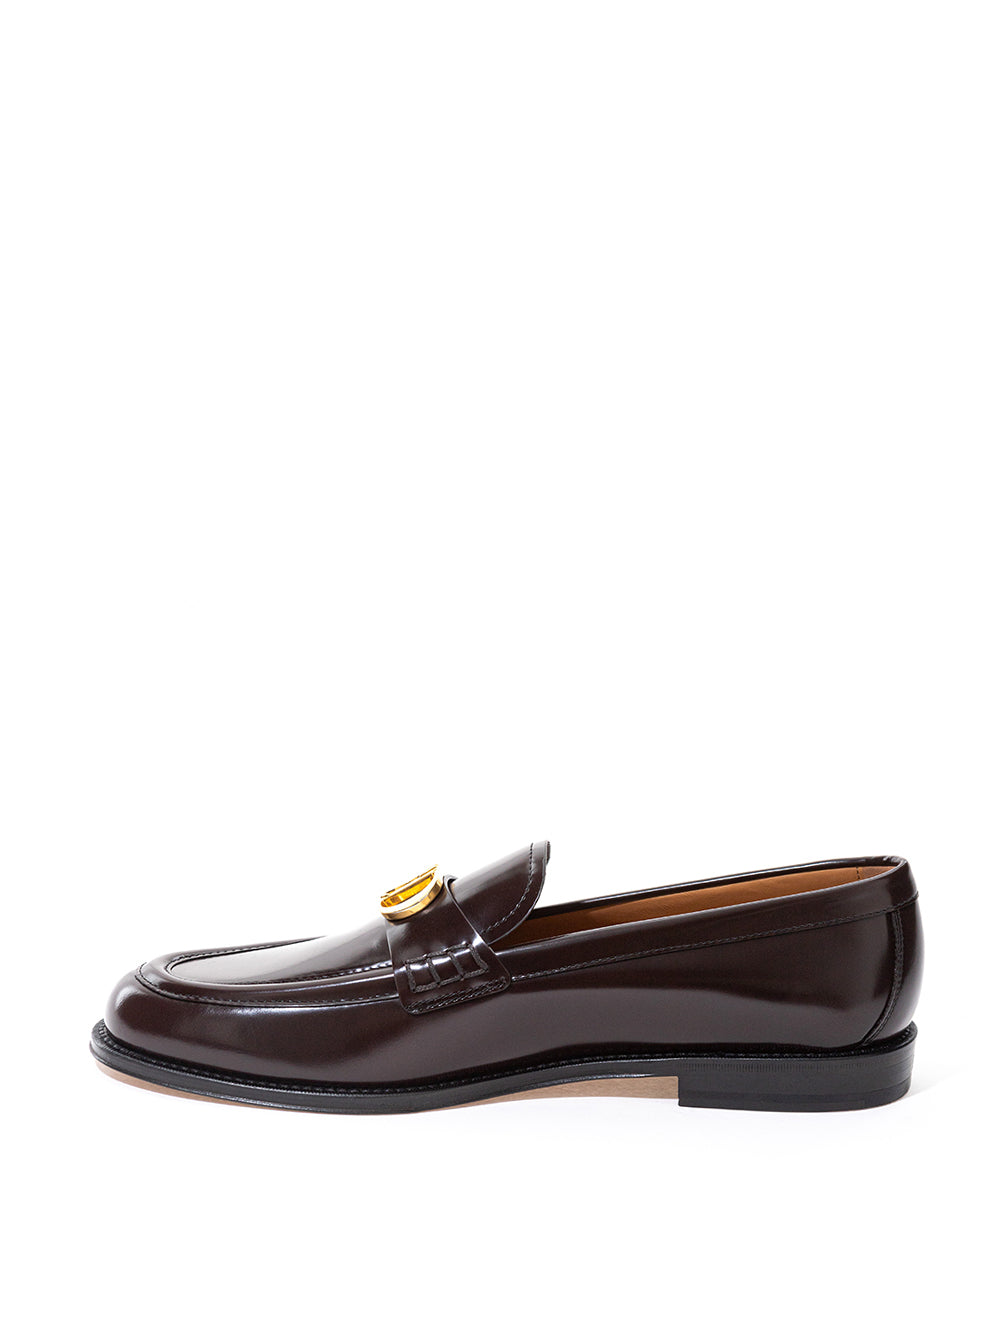 Dior Elegant Granville Brown Leather Loafers